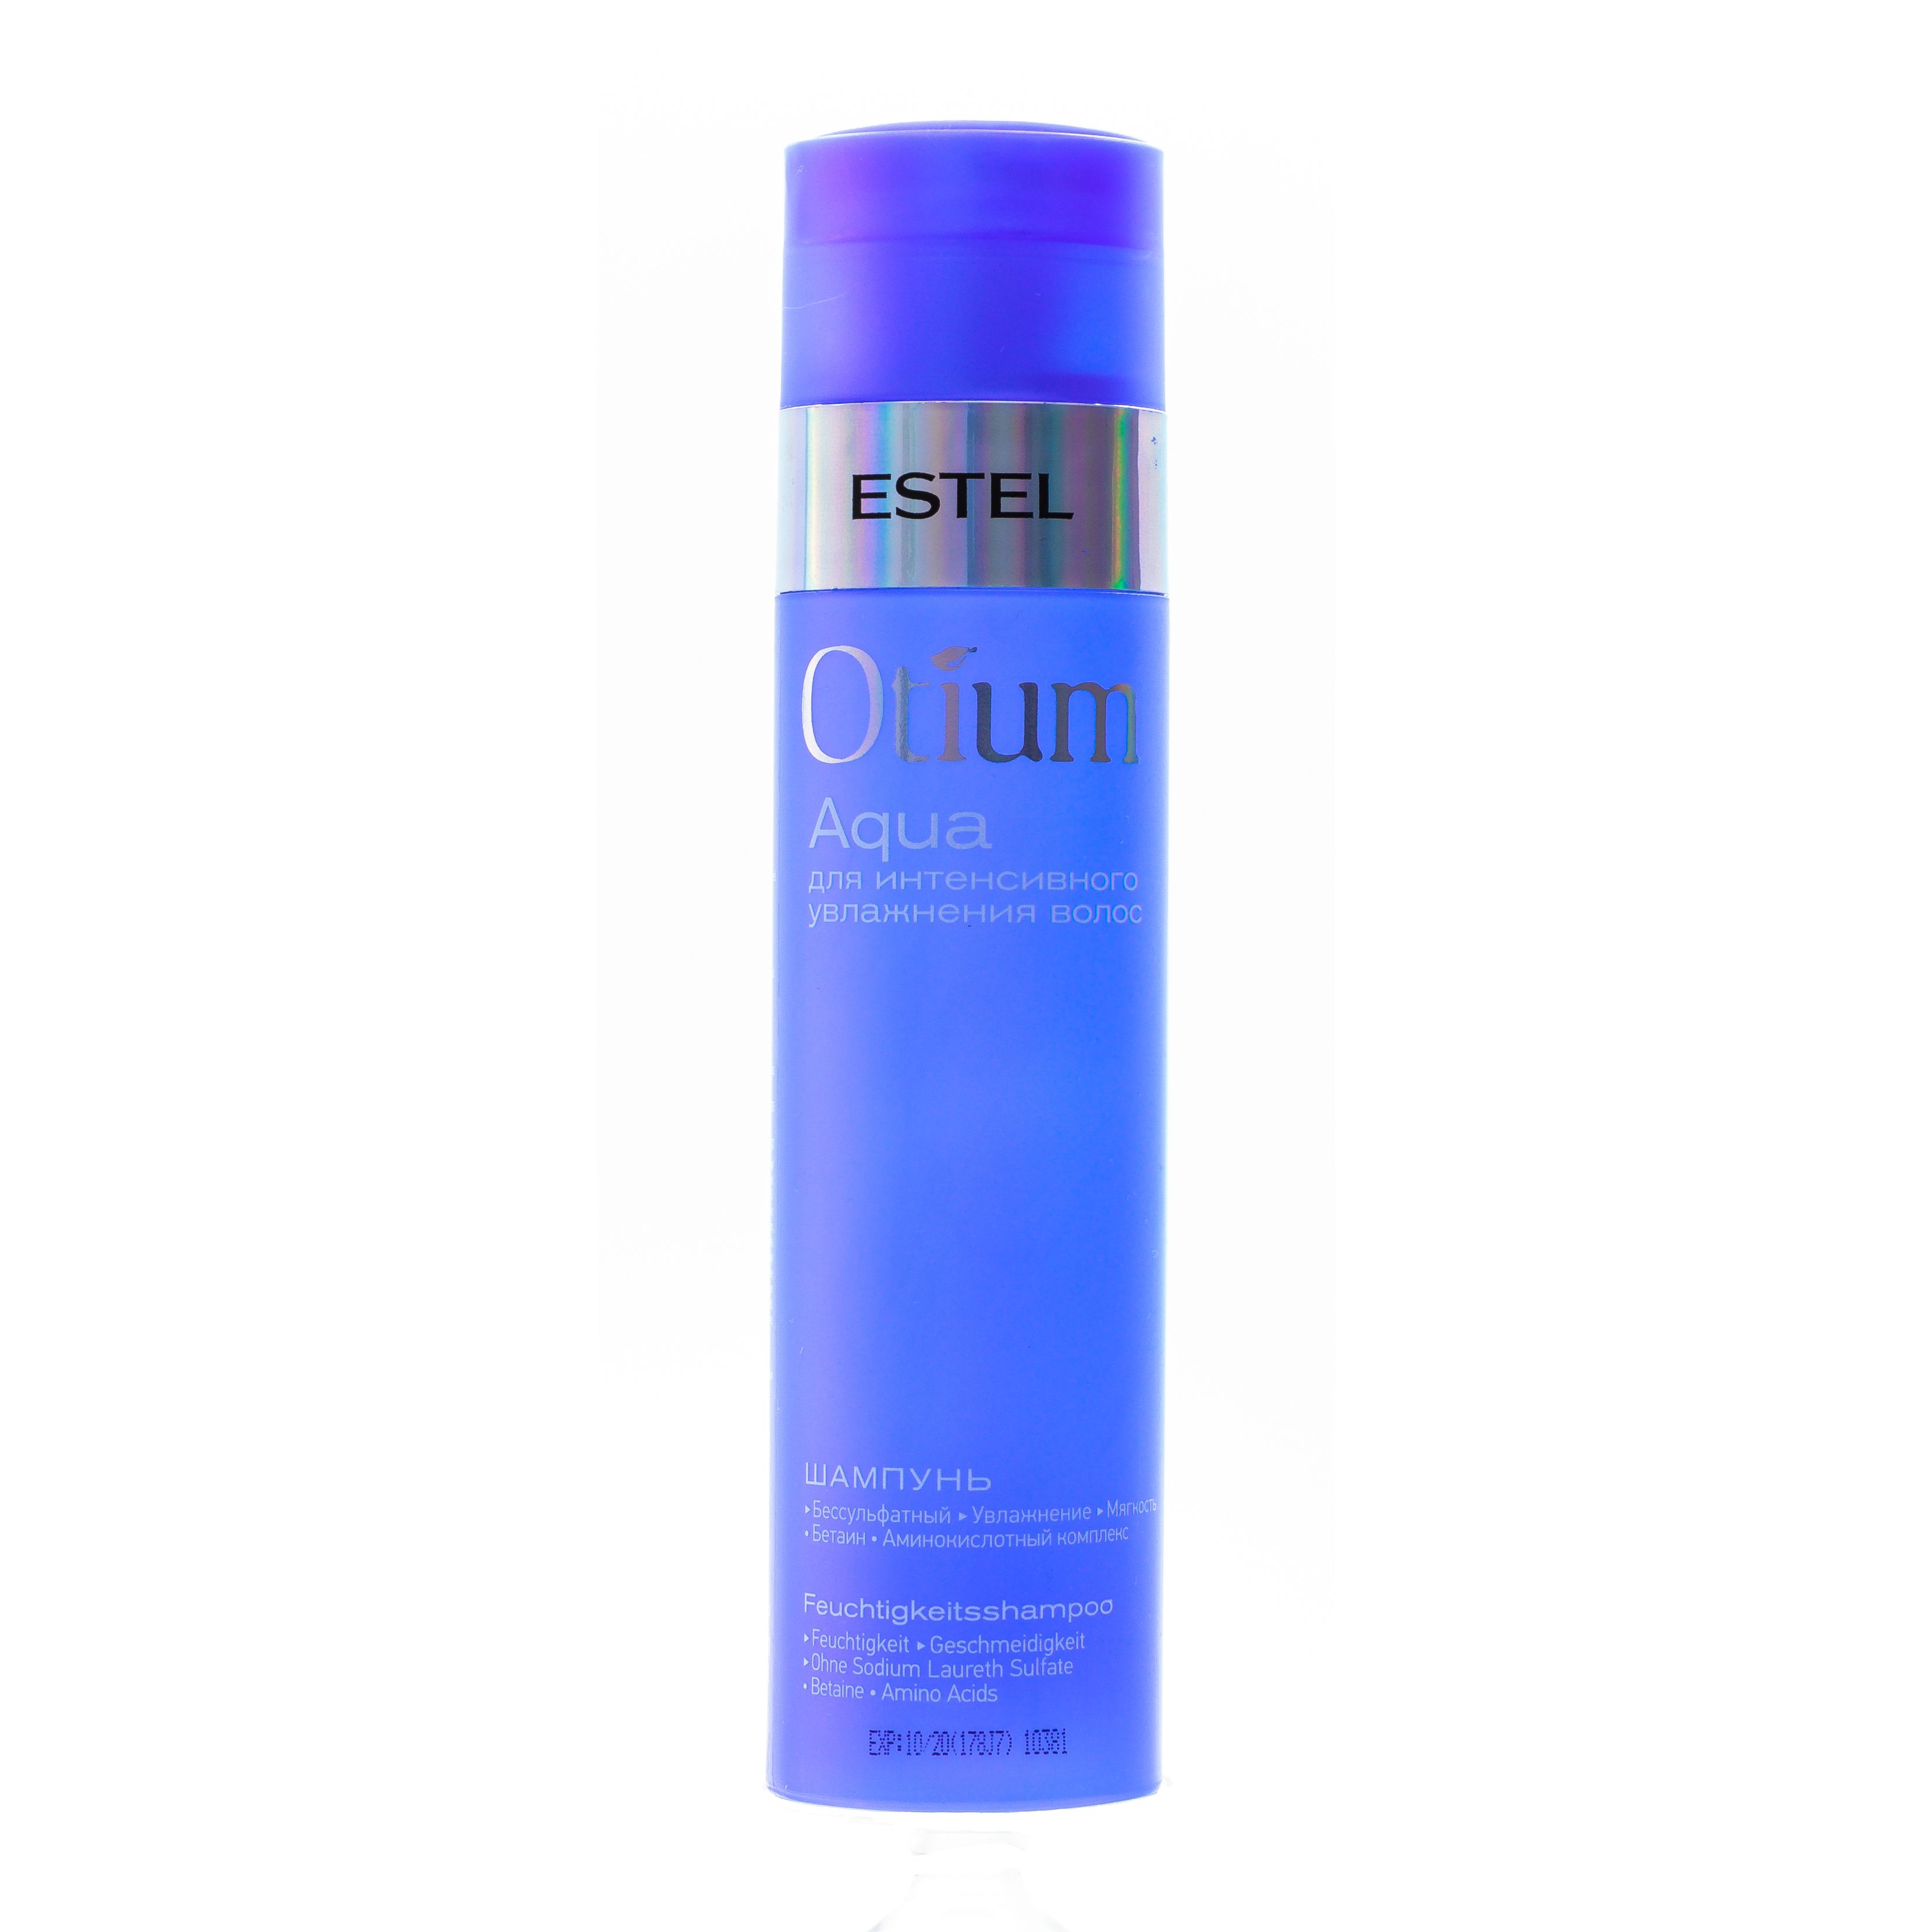 Шампунь Estel Professional Otium Aqua Shampoo 250 мл